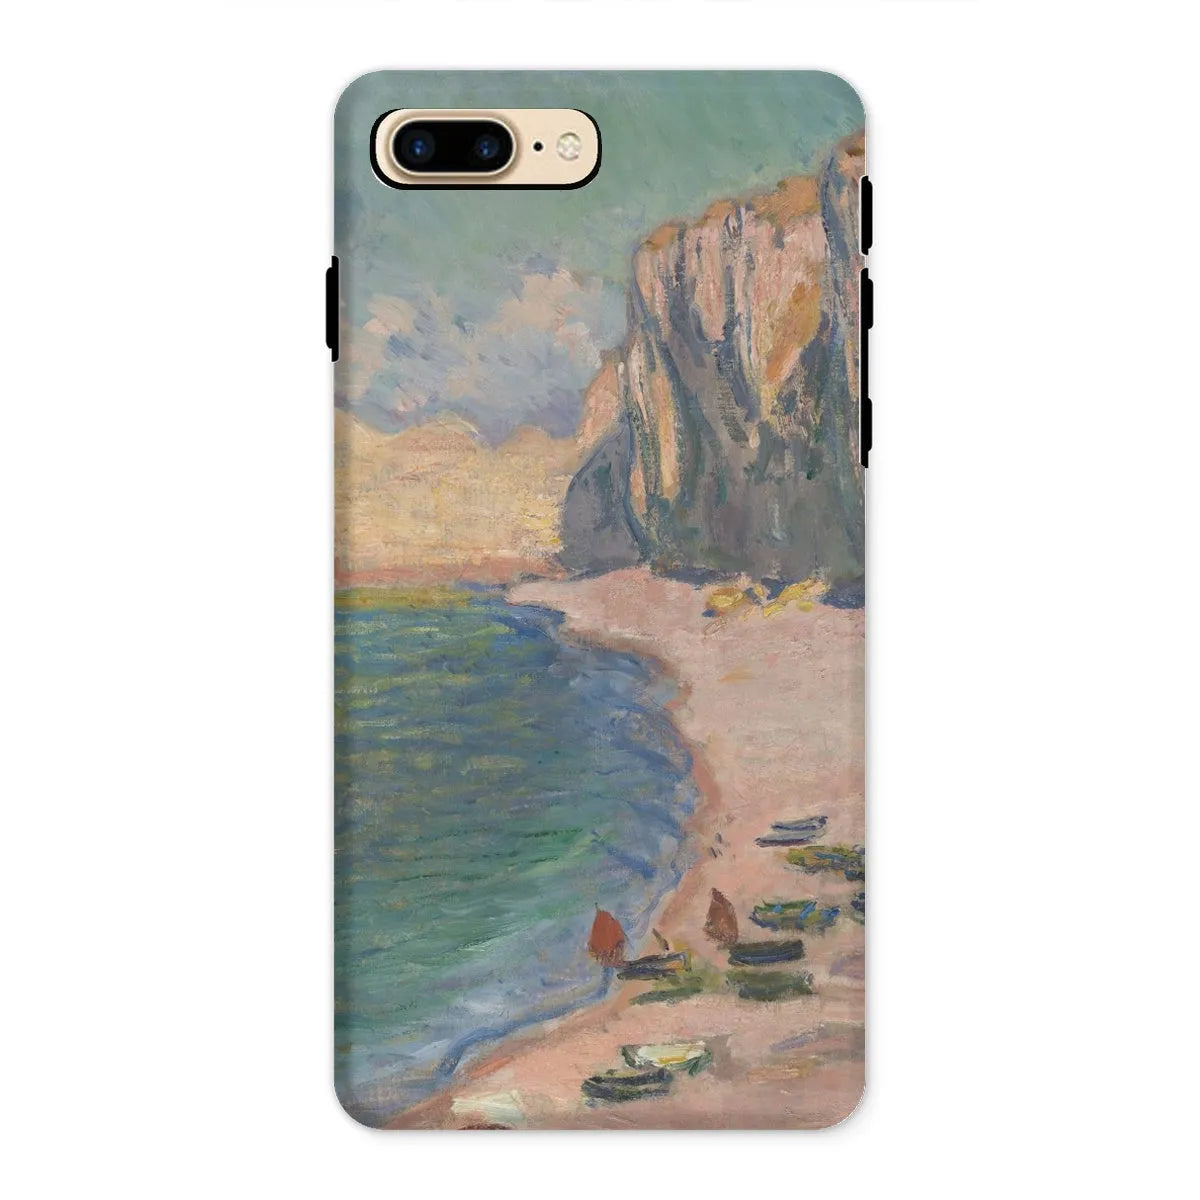 étretat - Impressionist Art Phone Case - Claude Monet - Iphone 8 Plus / Matte - Mobile Phone Cases - Aesthetic Art